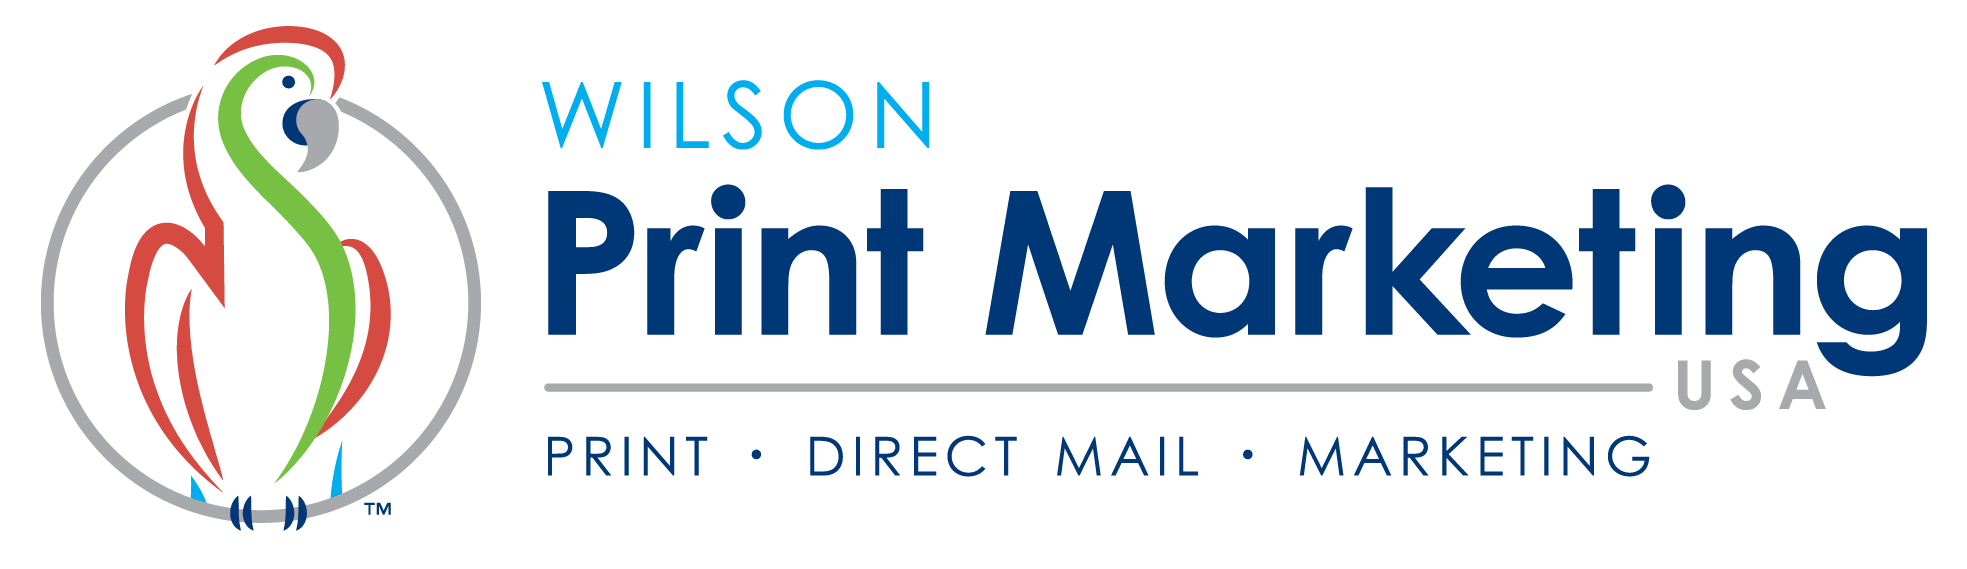 Wilson Printing USA